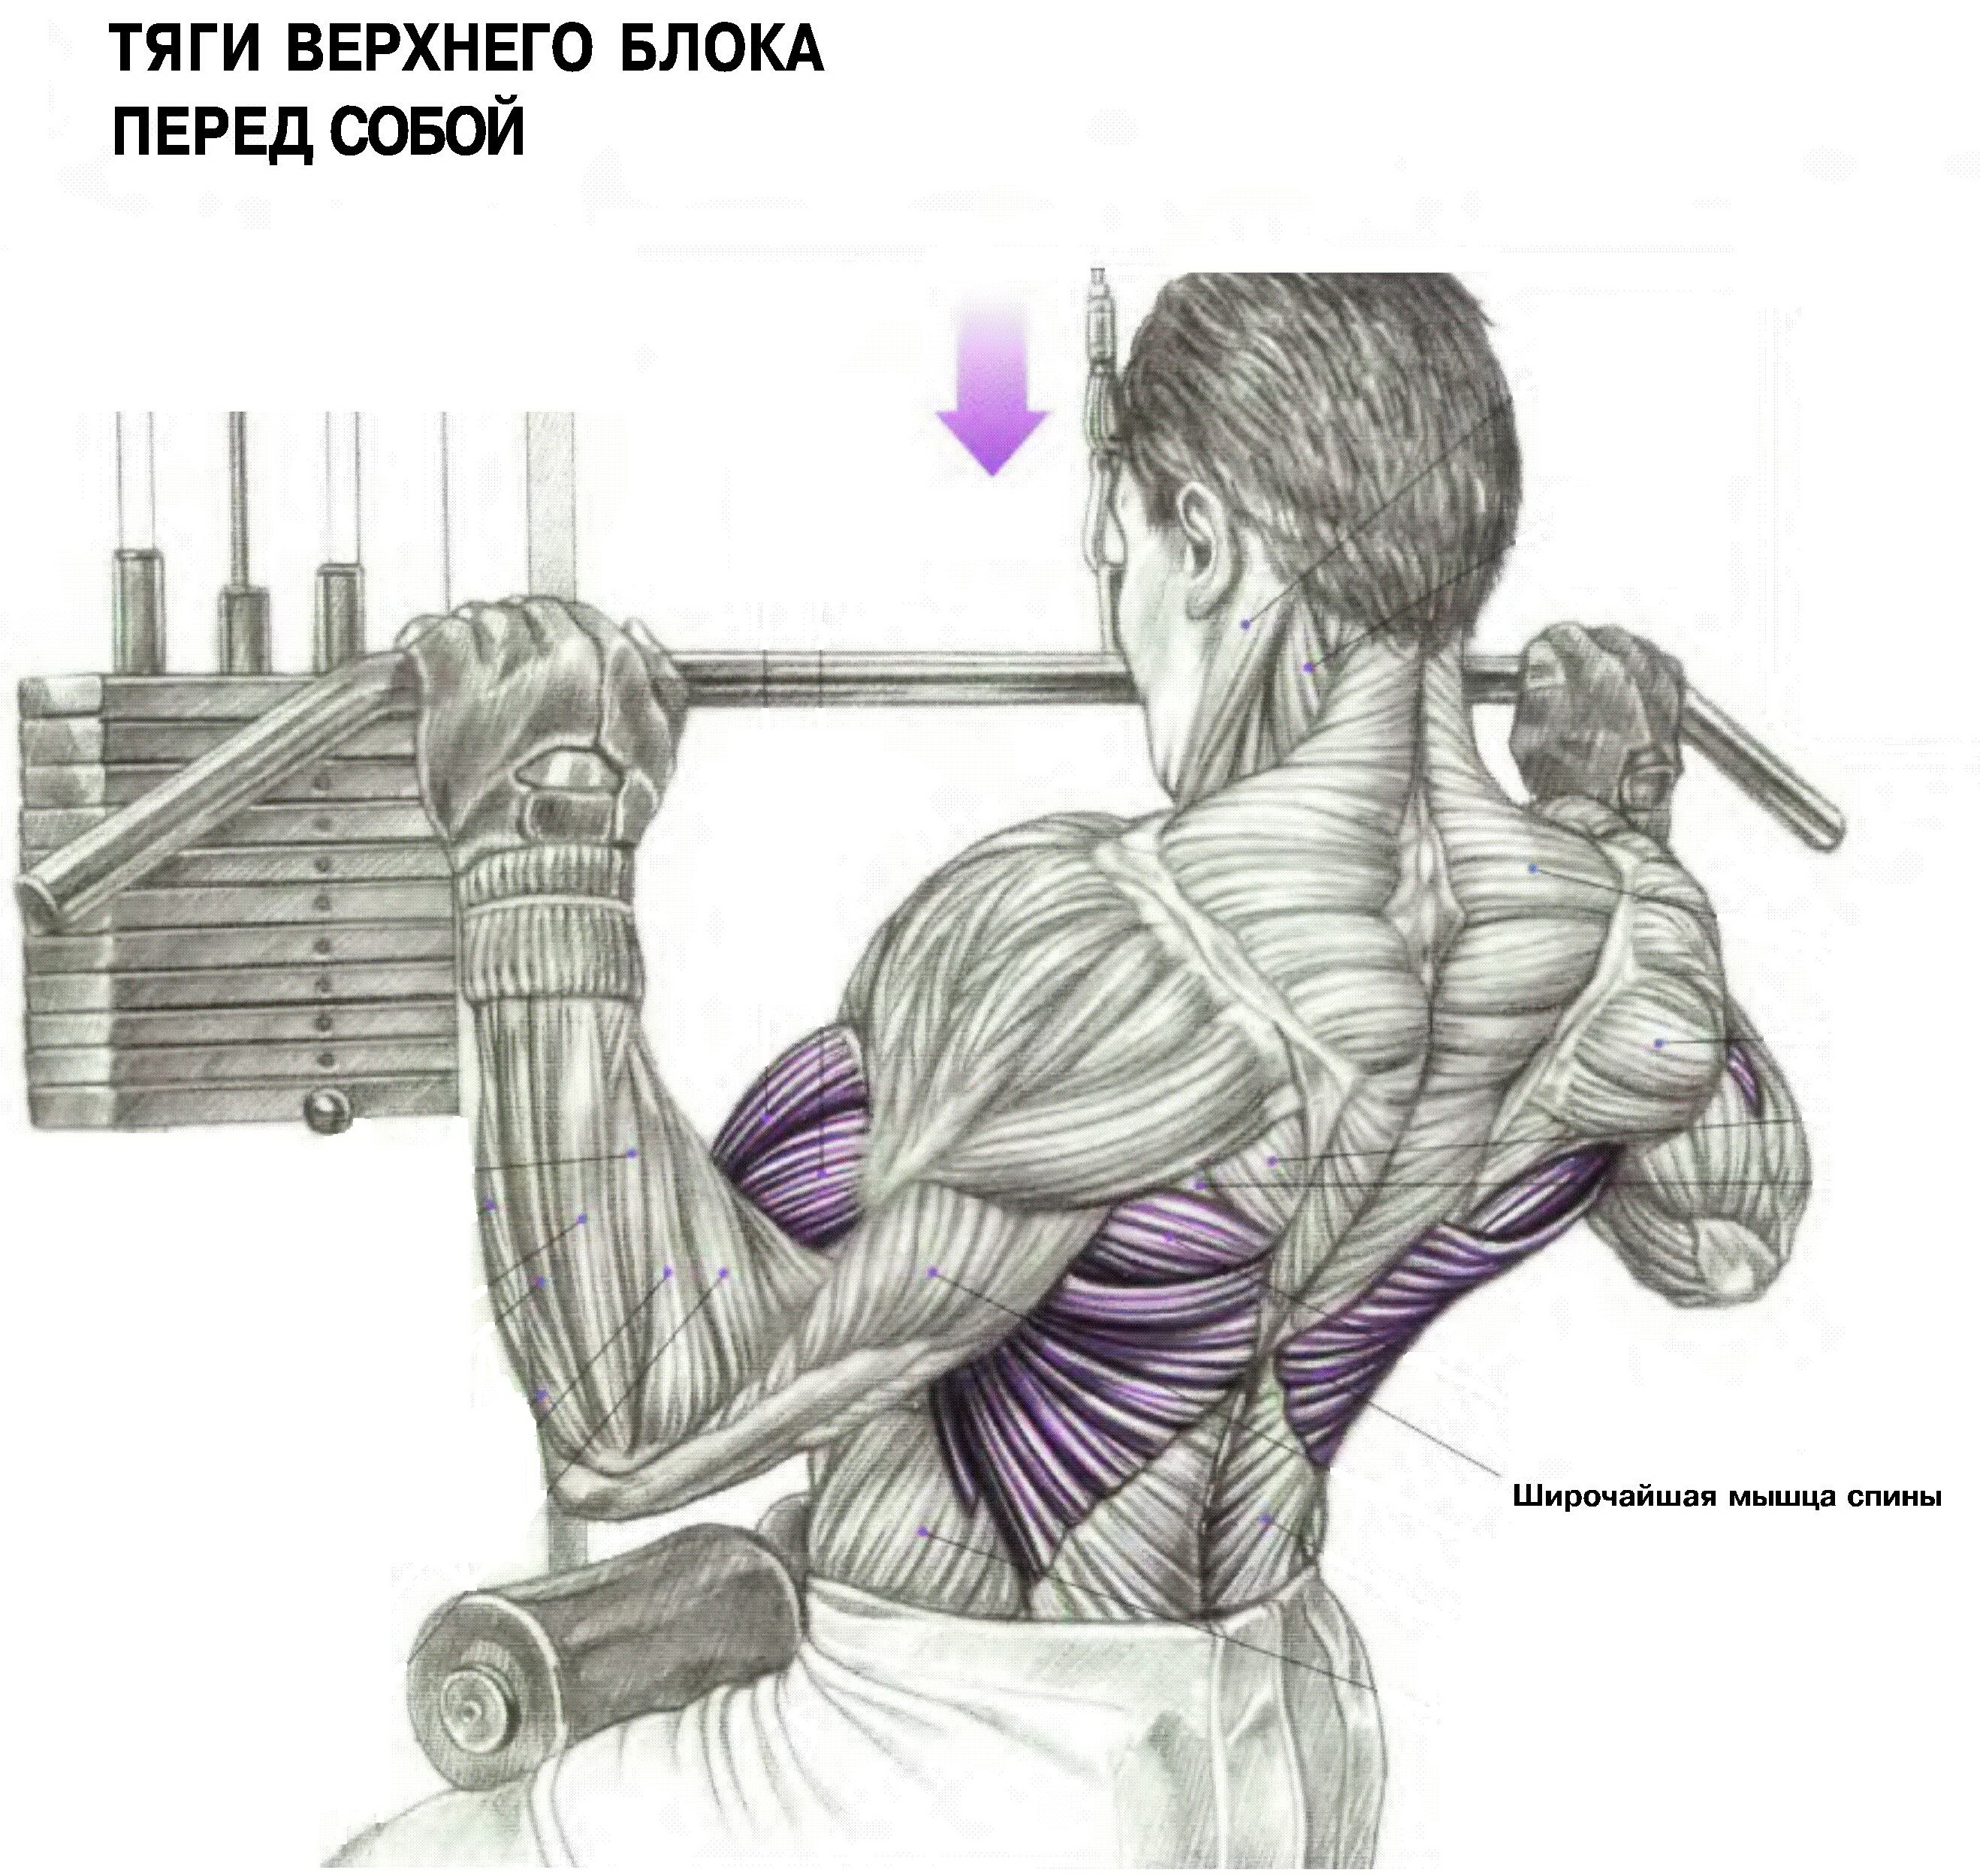 тренировка груди и спины для мужчин фото 85